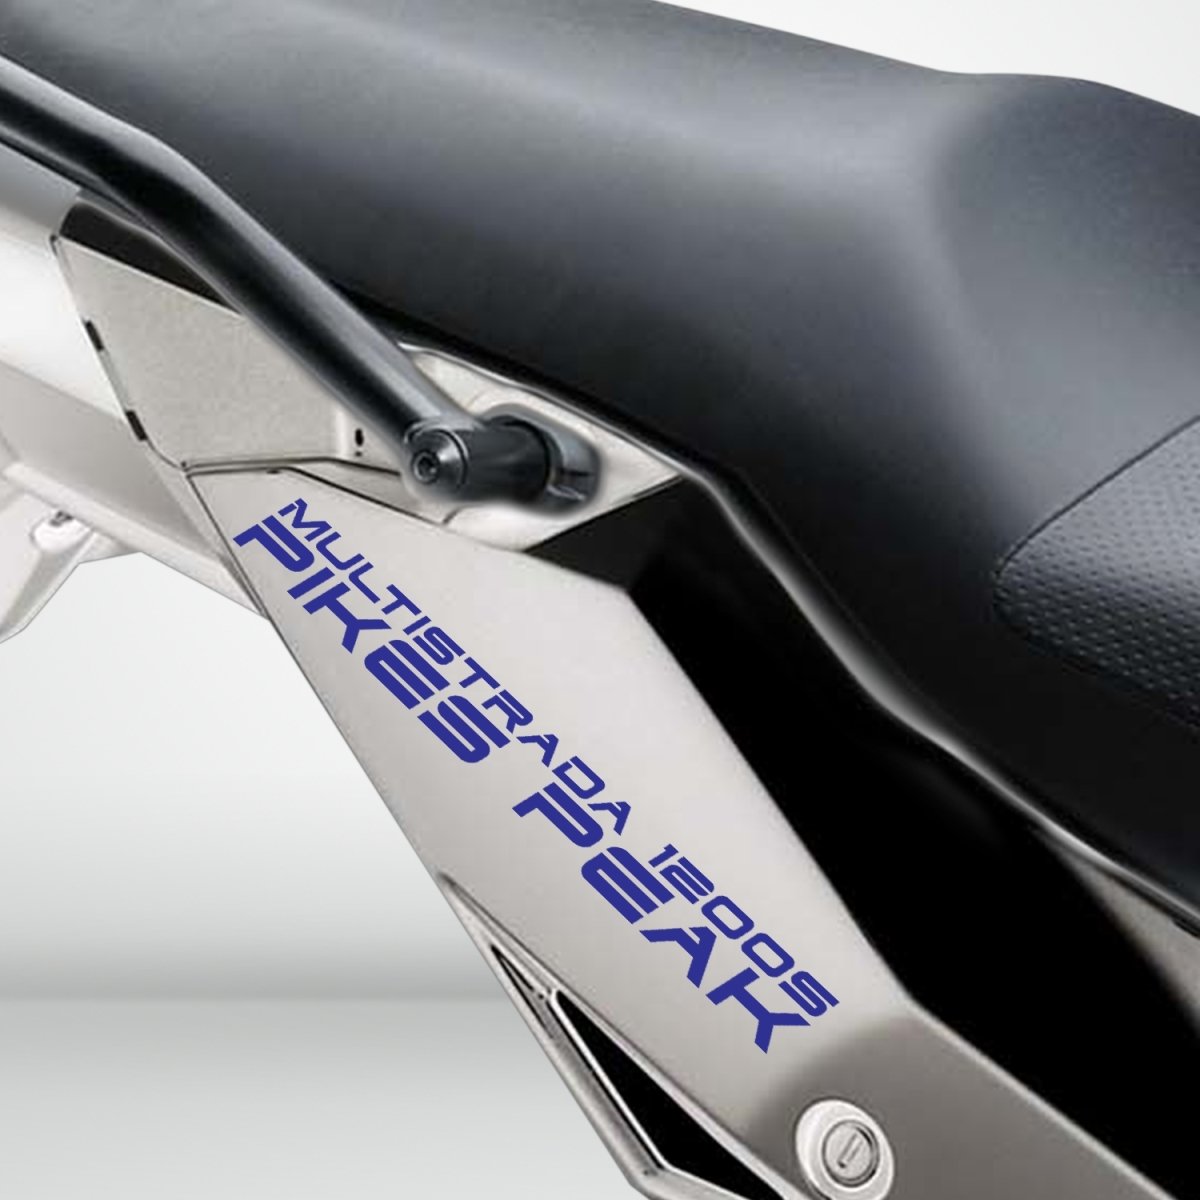 Motorcycle Superbike Sticker Decal Pack Waterproof for Ducati Multistrada 1200S Pikes Peak - Stickman Vinyls